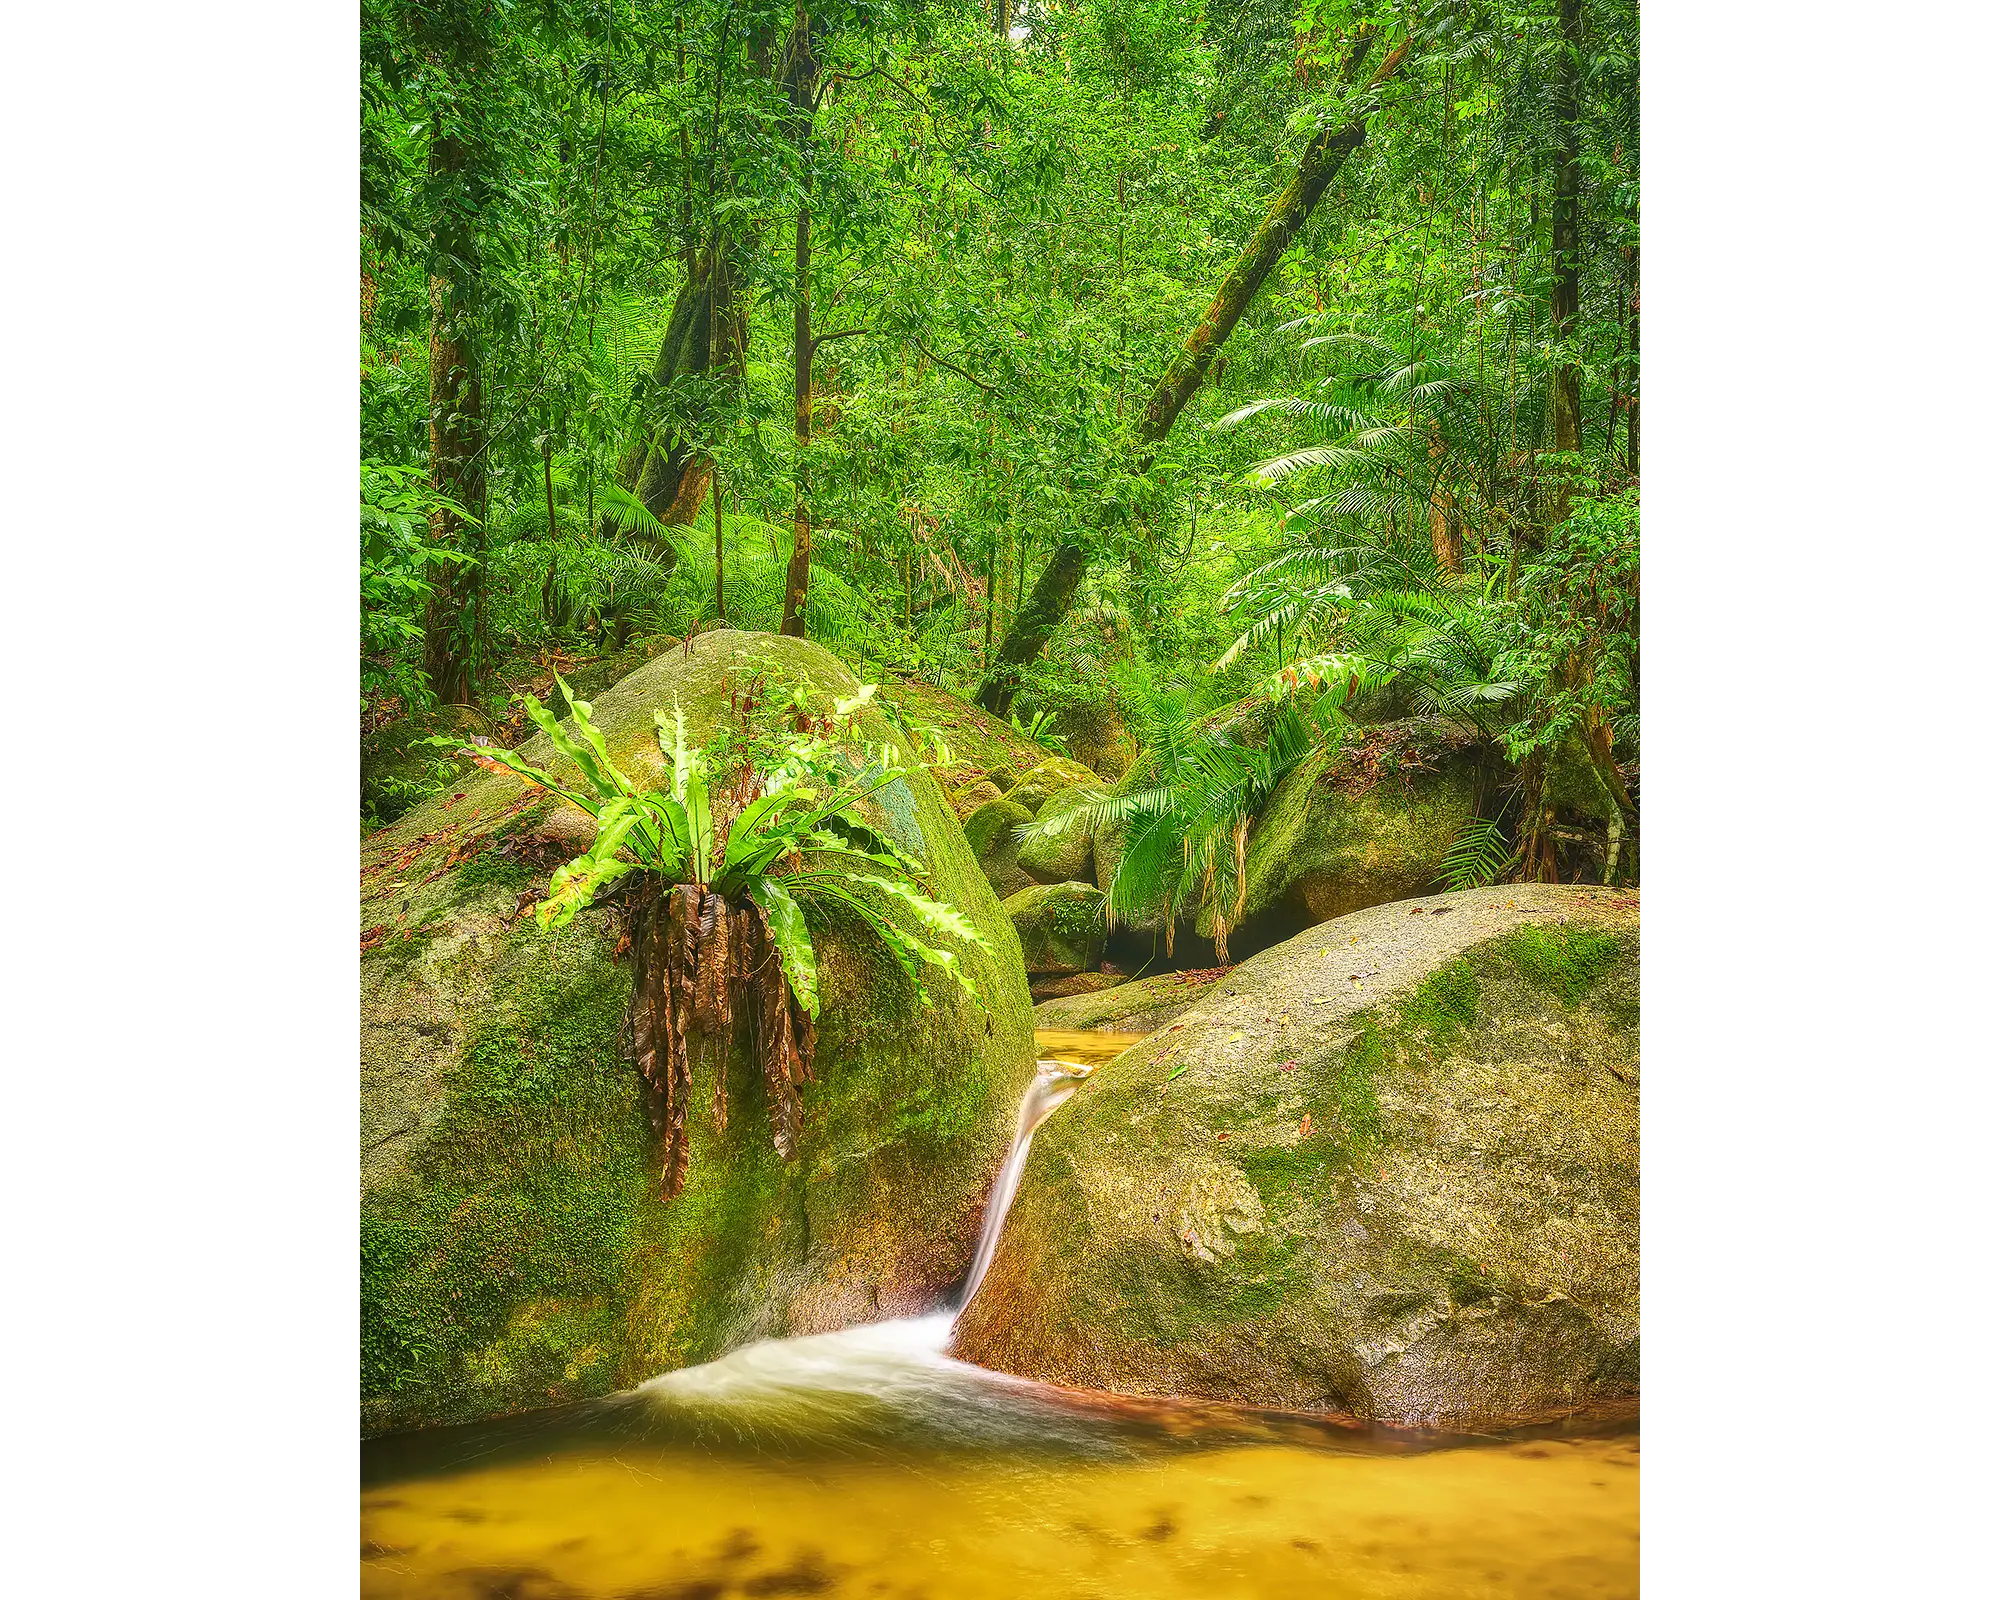 Rainforest Magic. small waterfall at Wurrmbu Creek, Daintree, Queensland, Australia.